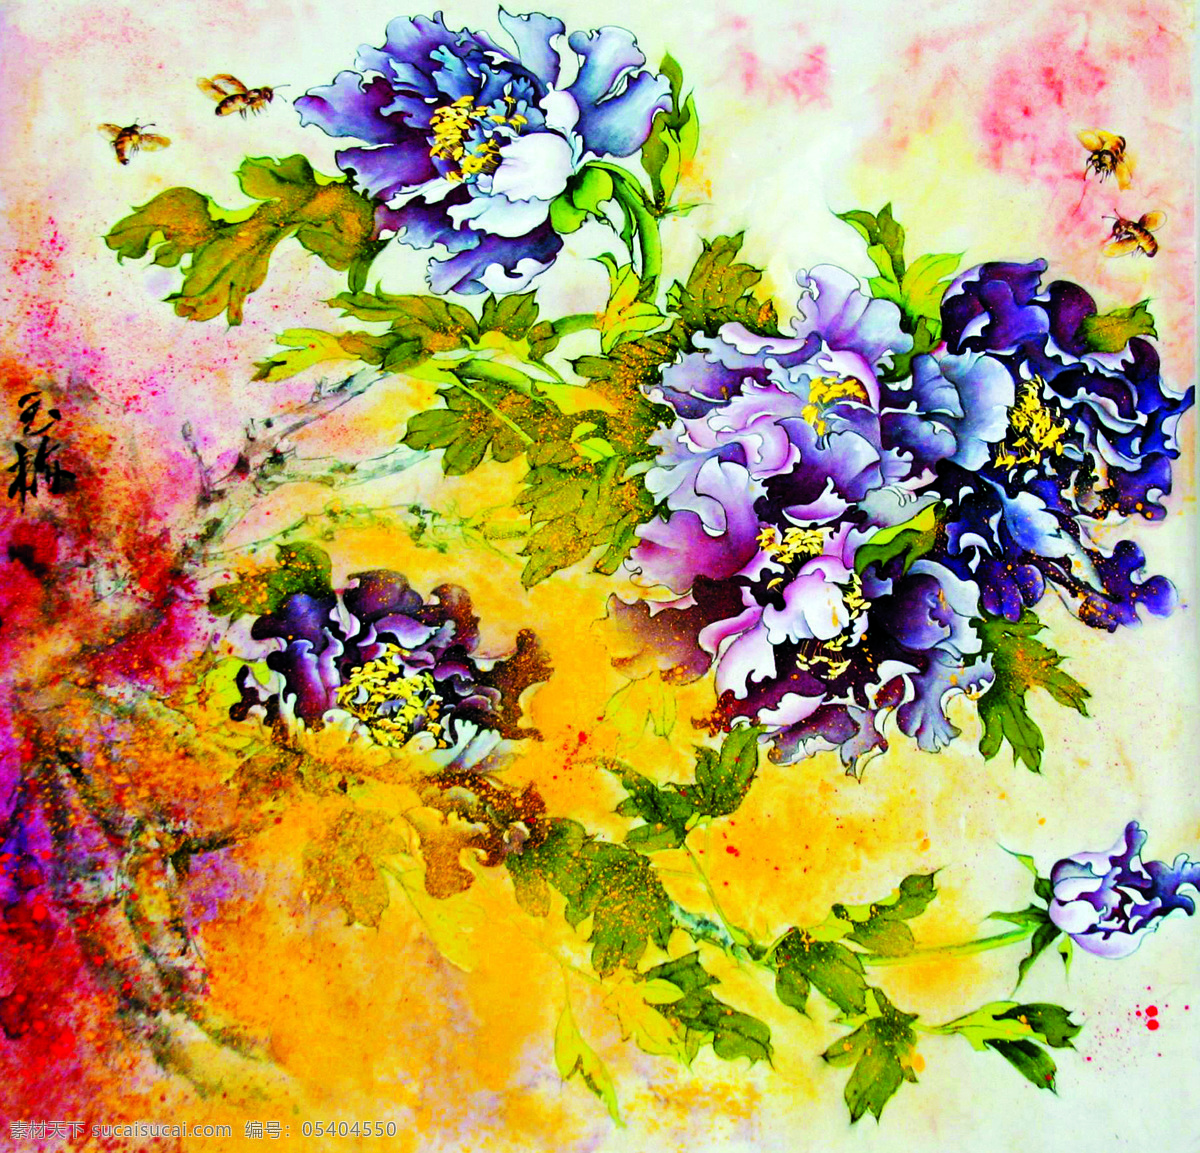 紫东风 美术 中国画 花木 花朵 牡丹花 紫牡丹 蜜蜂 国画艺术 绘画书法 文化艺术